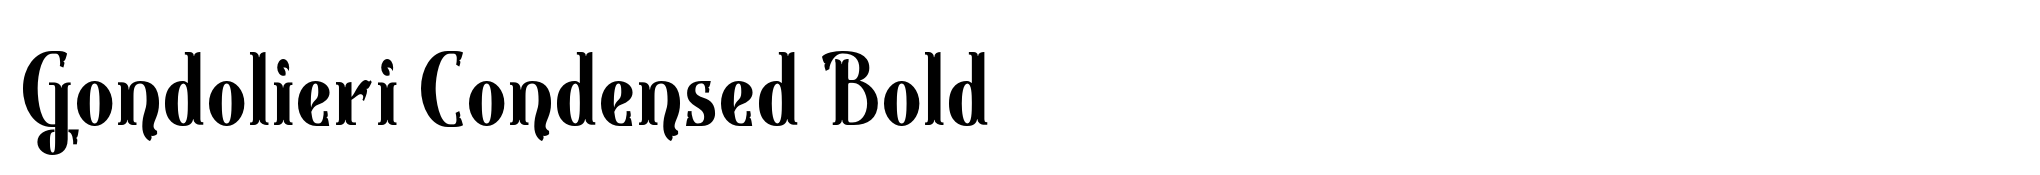 Gondolieri Condensed Bold image